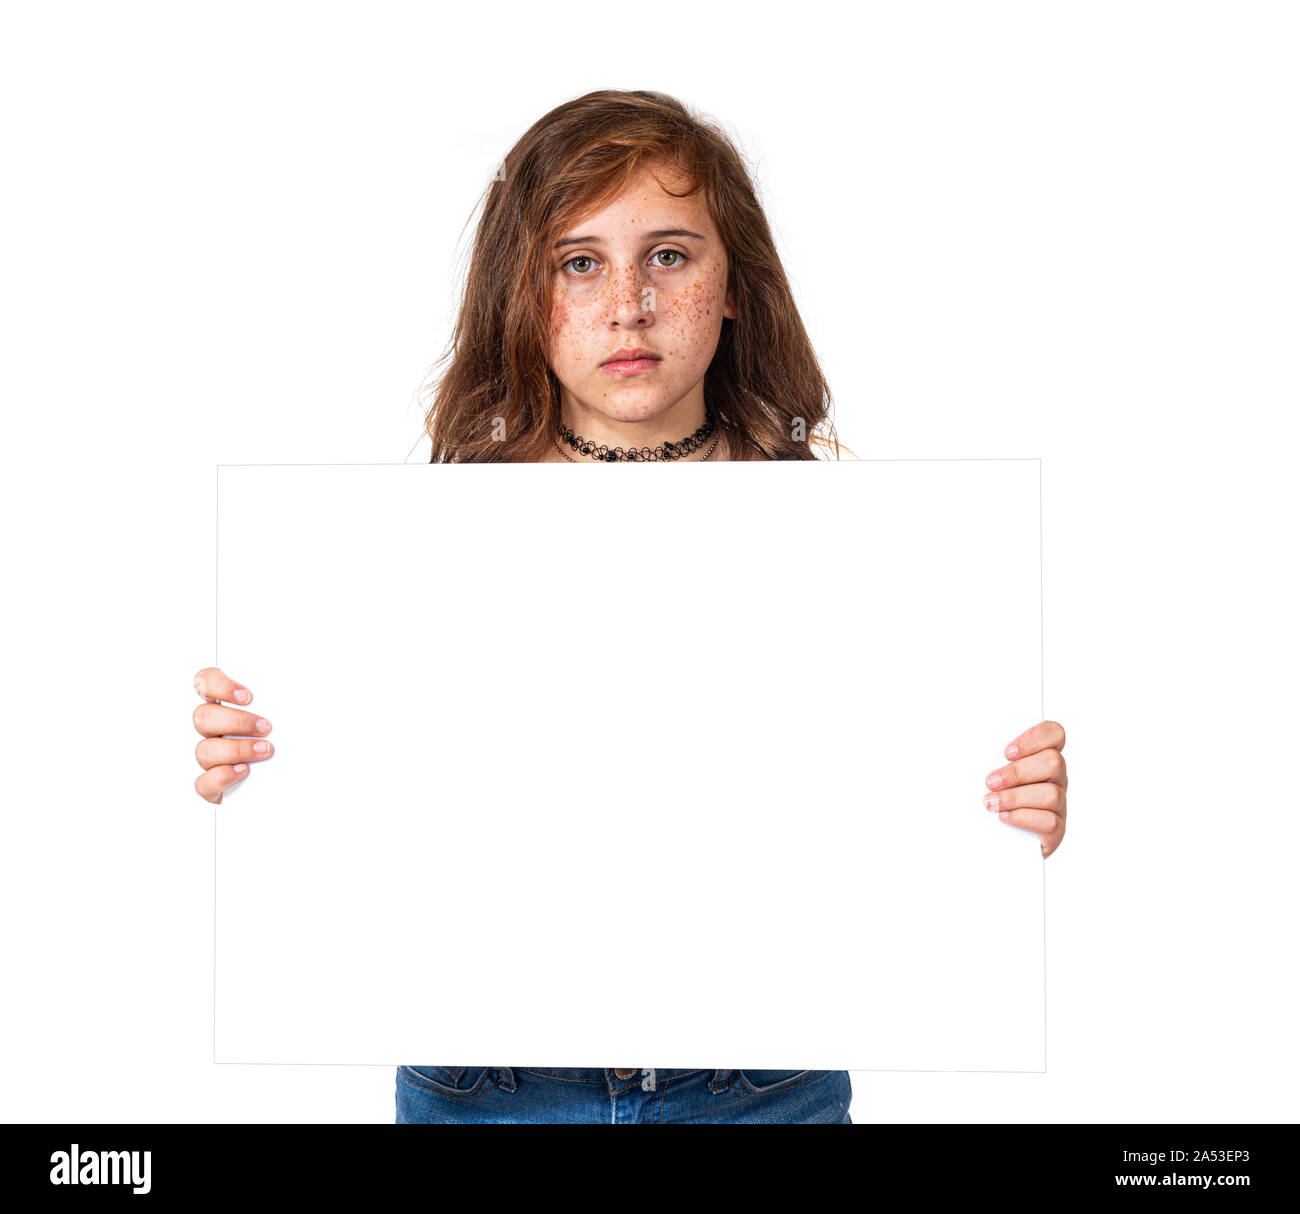 Estudio horizontal toma de una grave buscando pre-teen chica con pecas sosteniendo un cartel en blanco. Fondo blanco. Copie el espacio. Foto de stock